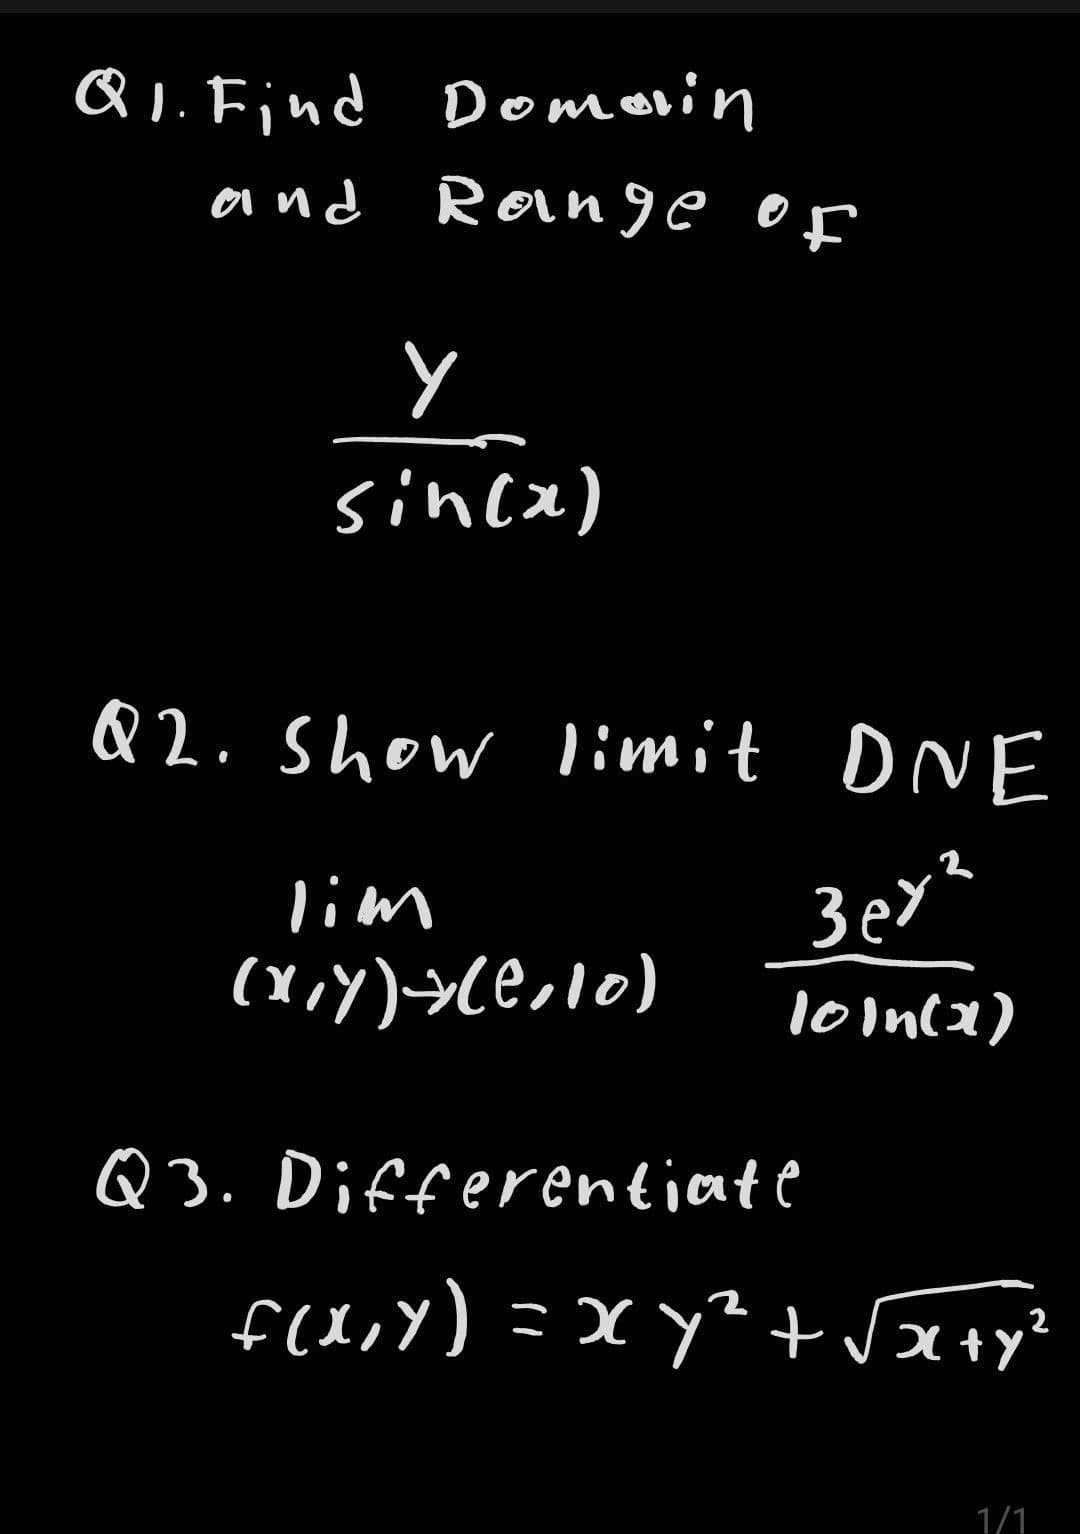 Q1. Find Domain
and
Range of
ㅅ
sin(x)
Q2. Show limit DNE
3er²
10in(x)
lim
(x,y) → (²,10)
Q3. Differentiate
f(x,y) = xy² + √x+y²
2
1/1